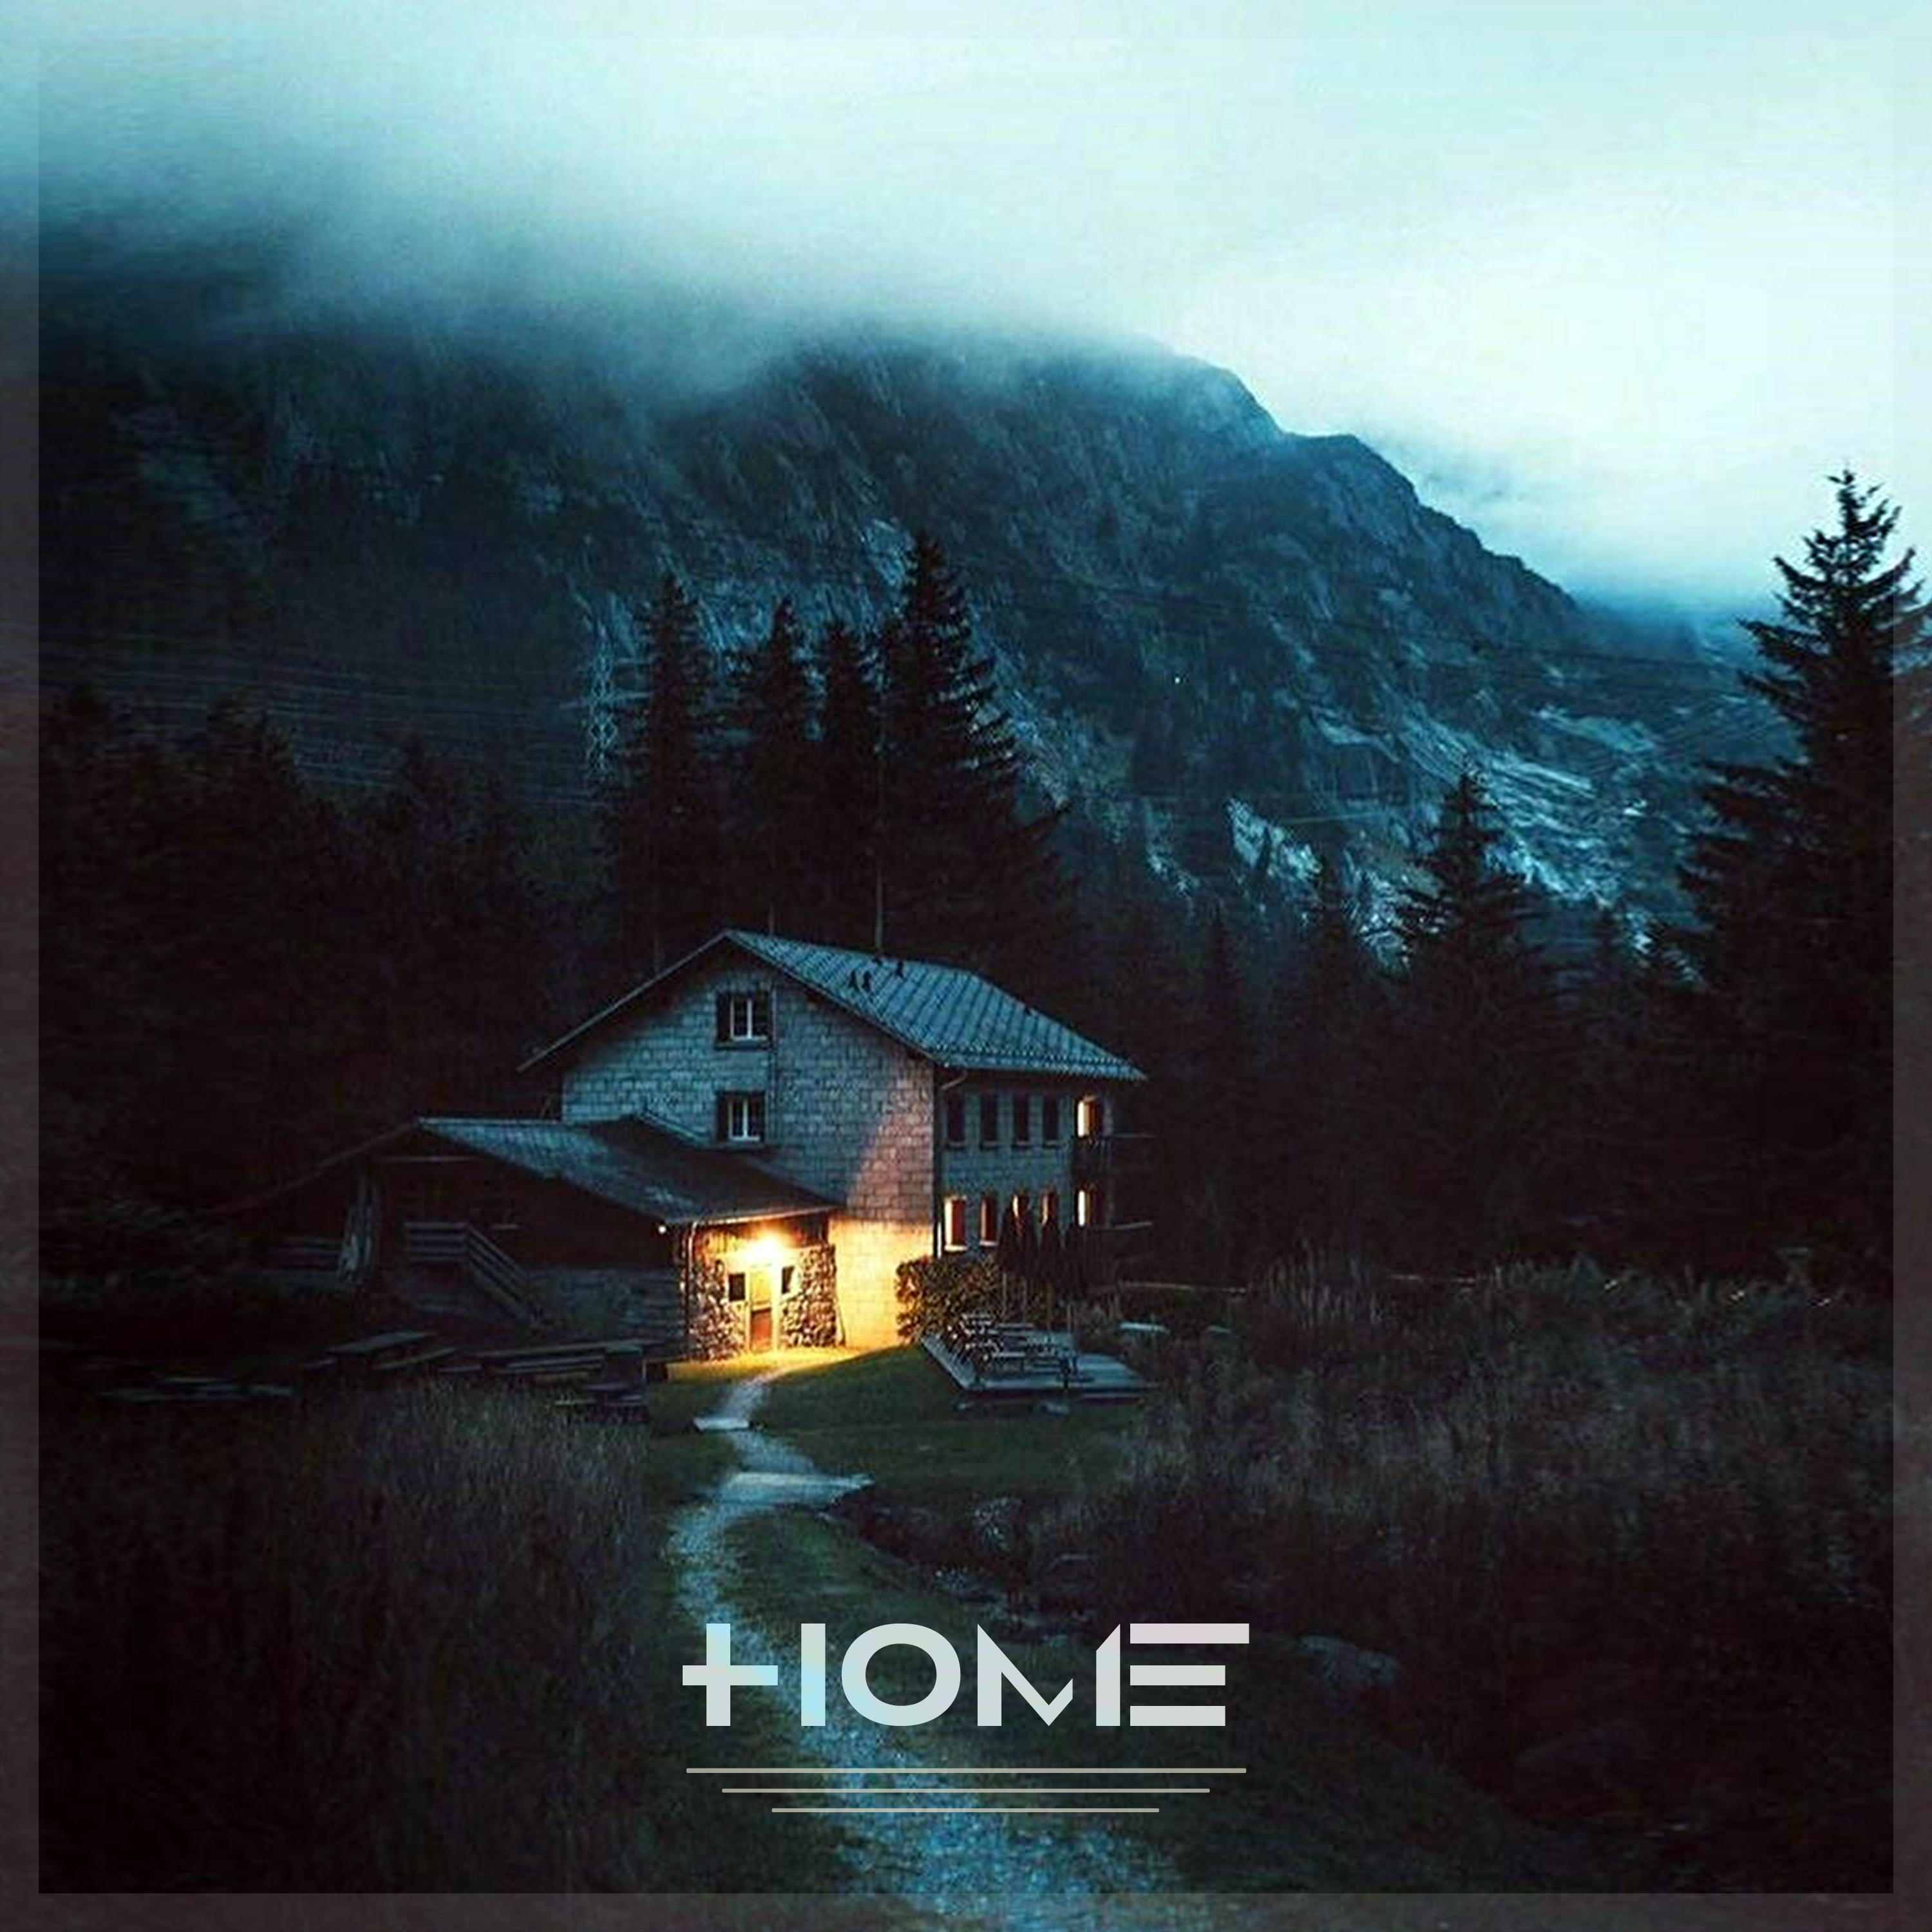 ET – “Home”